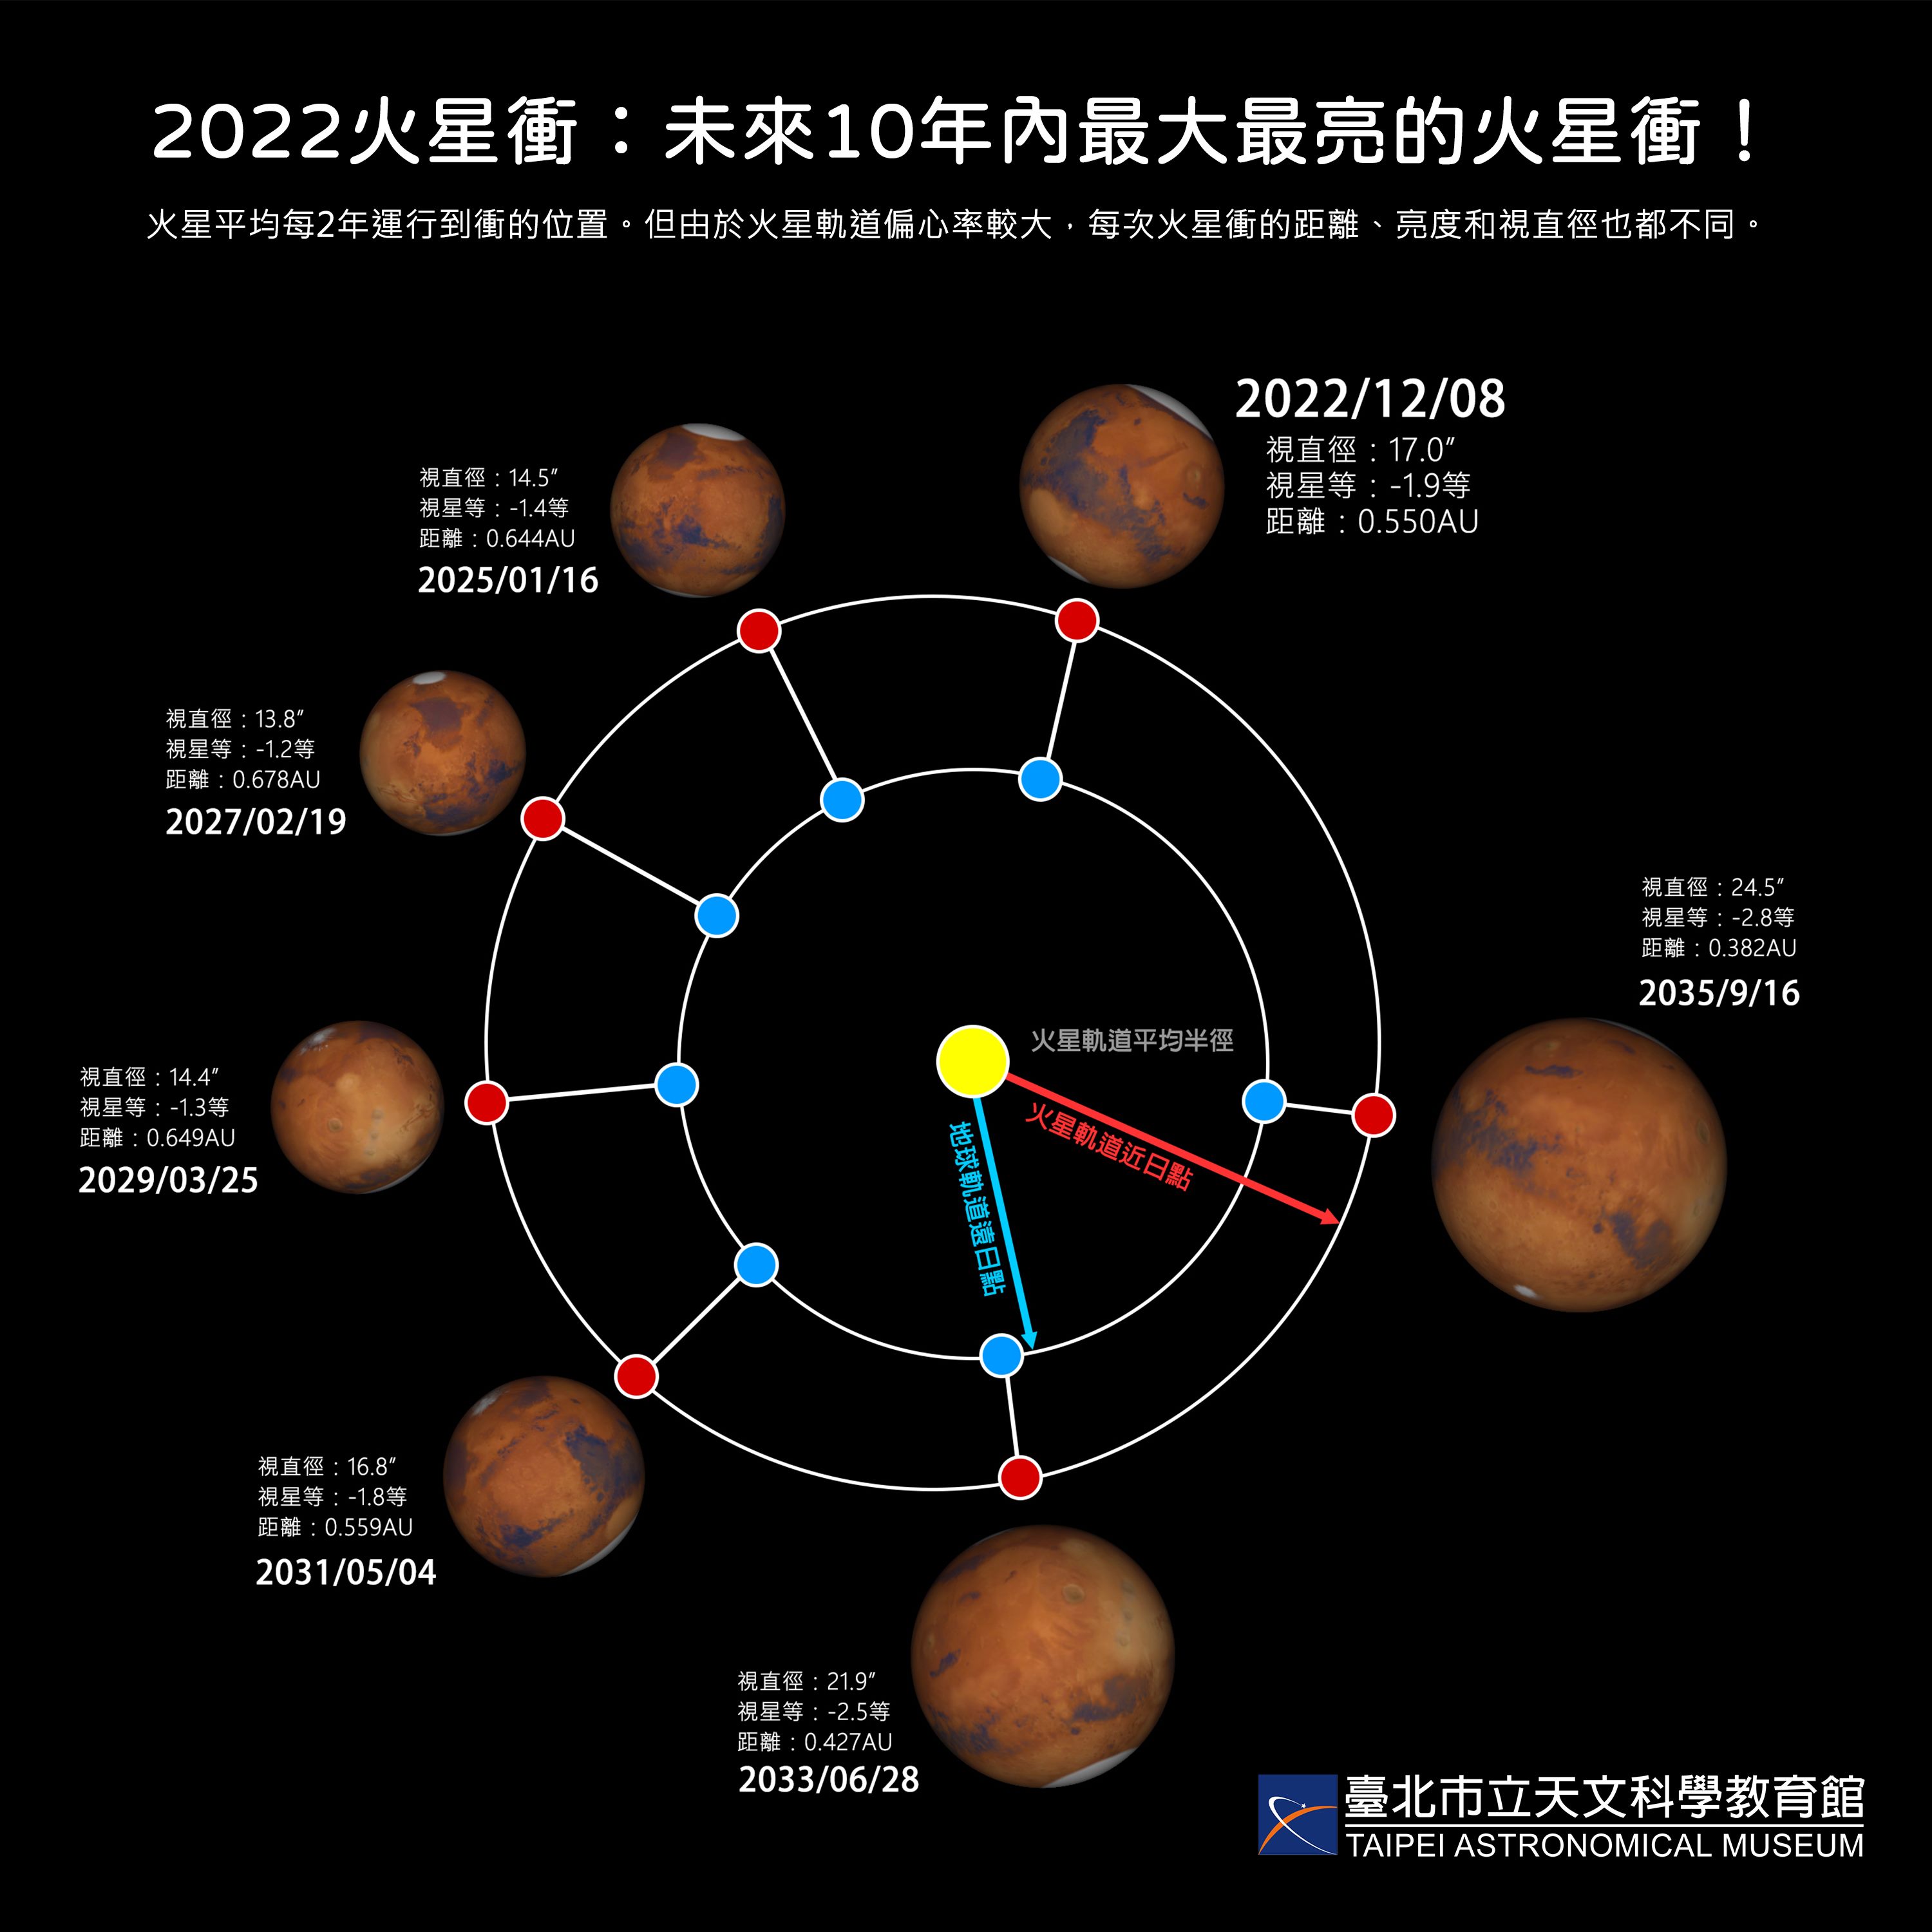 2022年至2035年的火星衝